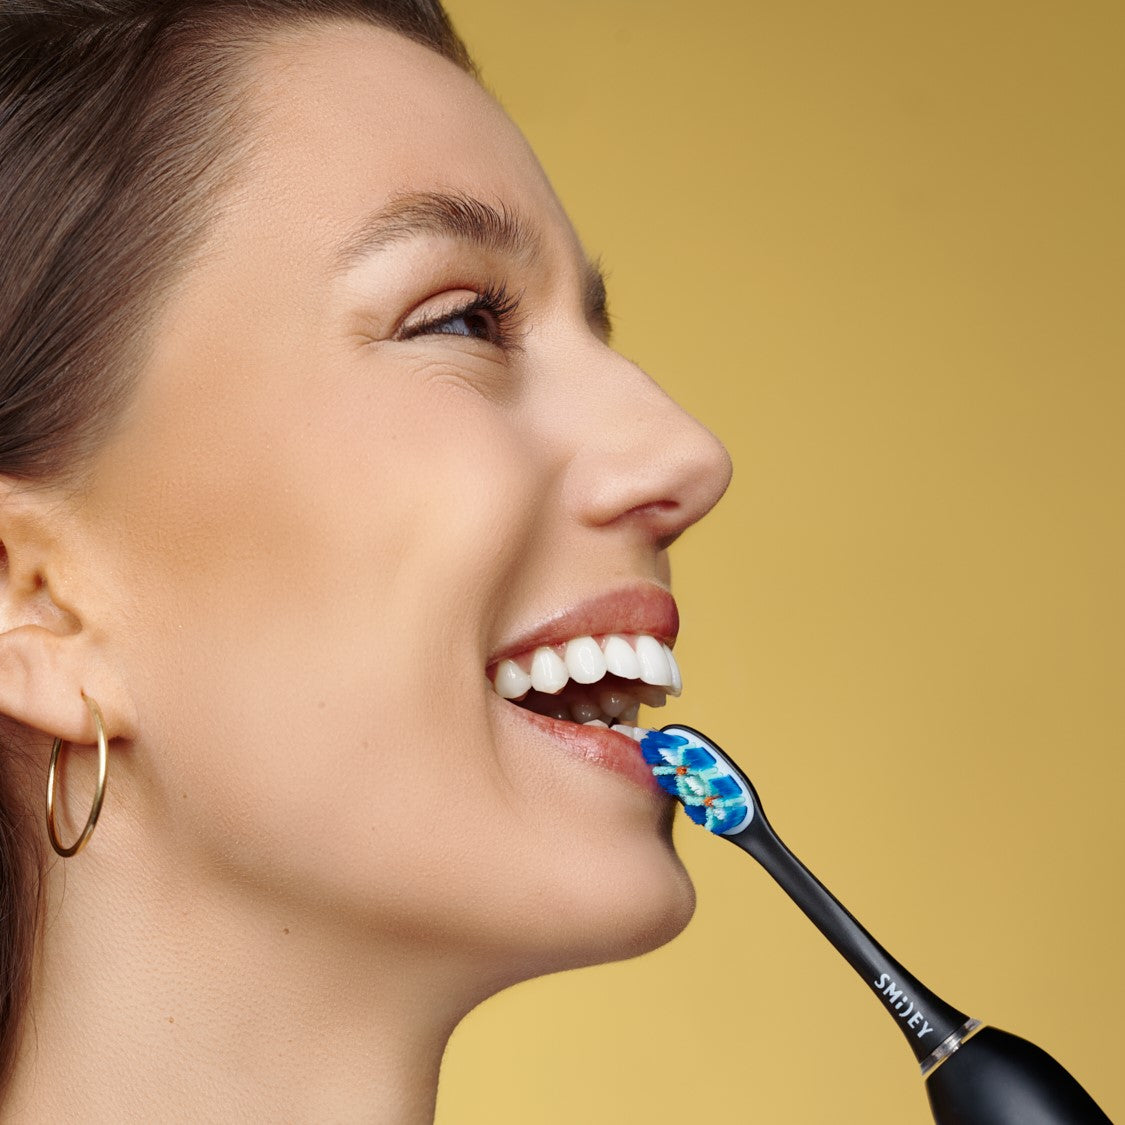 НАБОР электрическая зубная щетка Smiley Pro White черная + стерилизатор  электрическая зубная щетка купить купить электрощетку зубную купить электрощетку купить електричну зубну щітку купити зубну щітку електричну